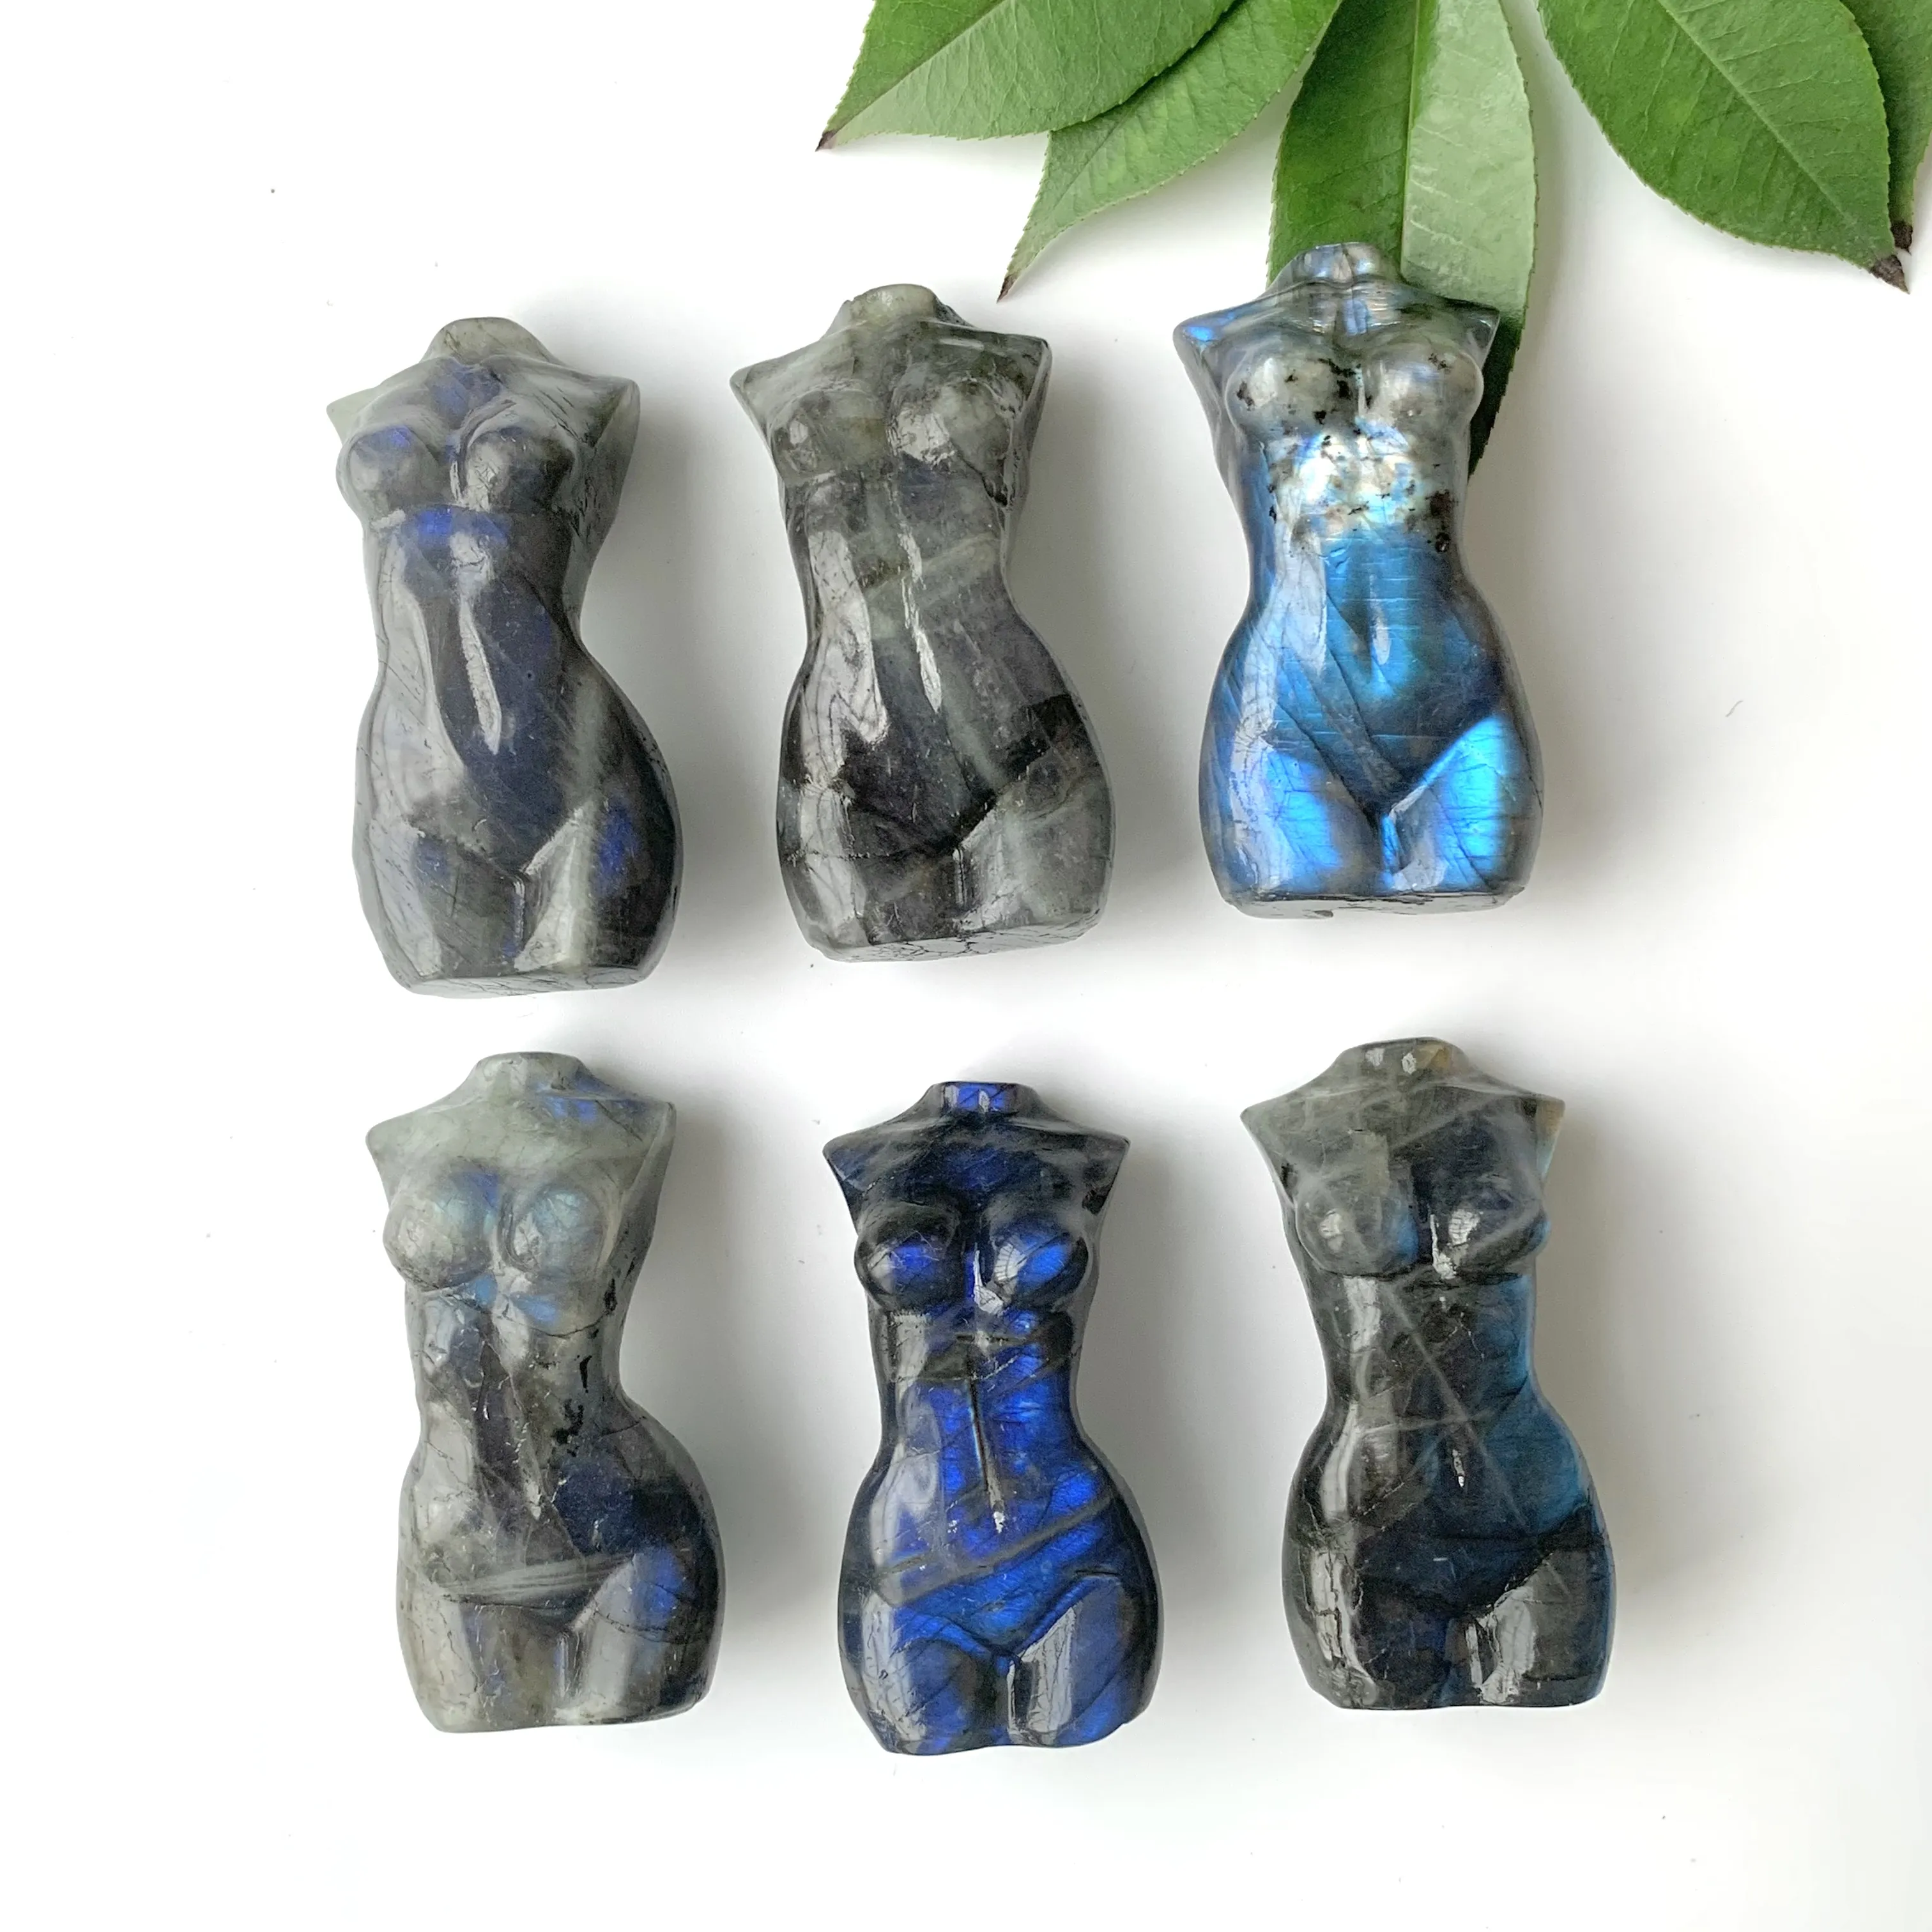 تمثال لابرادوريت من الحجر الطبيعي, قطعة يدوية جميلة من اللابرادوريت باللون الأزرق